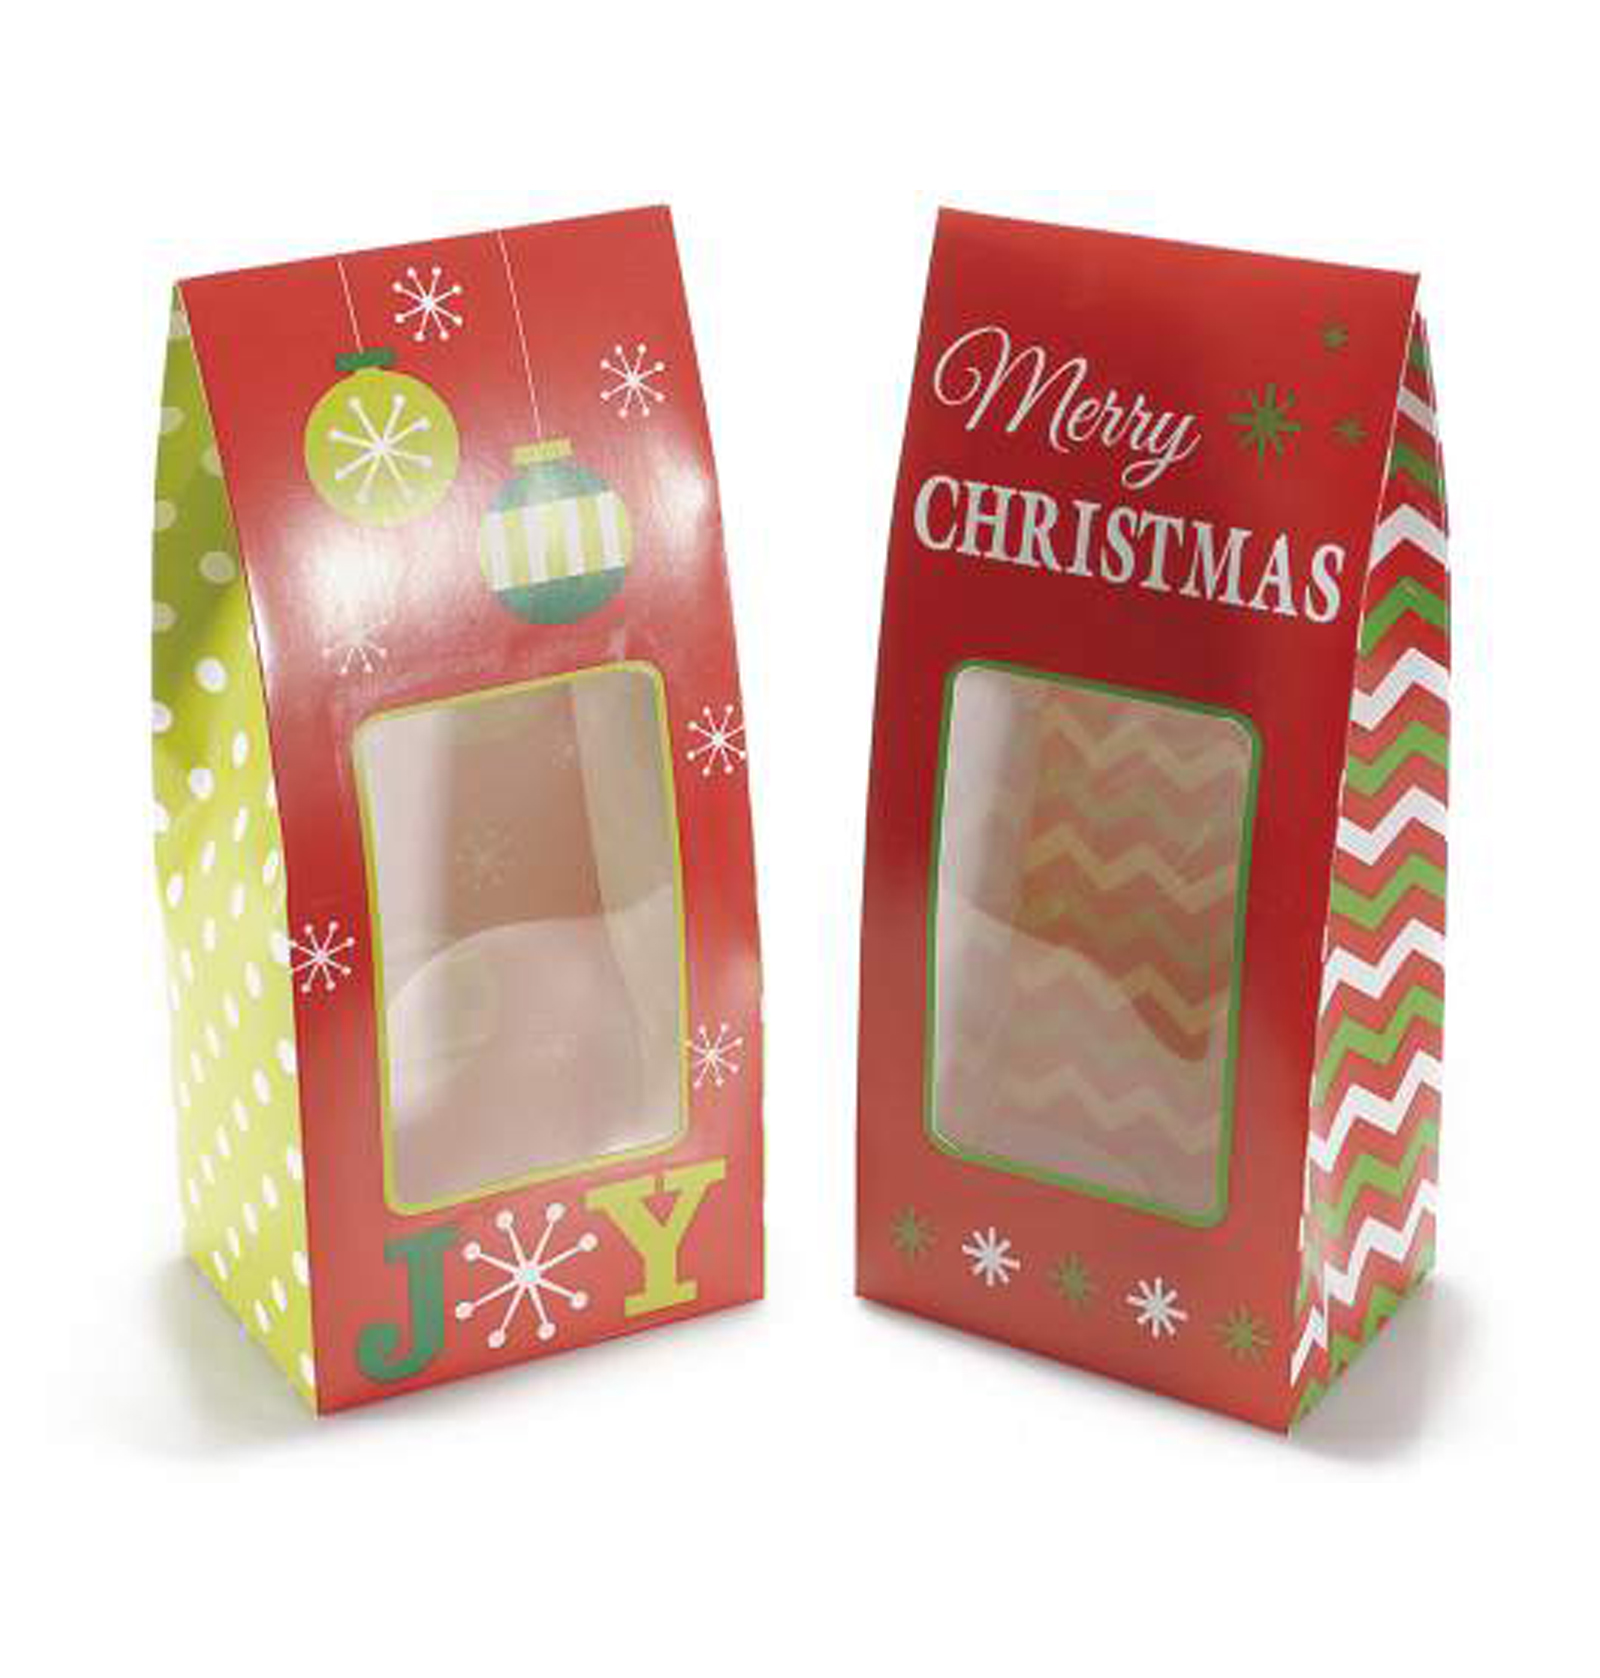 30Pz. Scatole regalo natalizia in carta colorata Merry Christmas con vetrinetta  Misure: cm 10,5 x 7,5 x 22,5 H